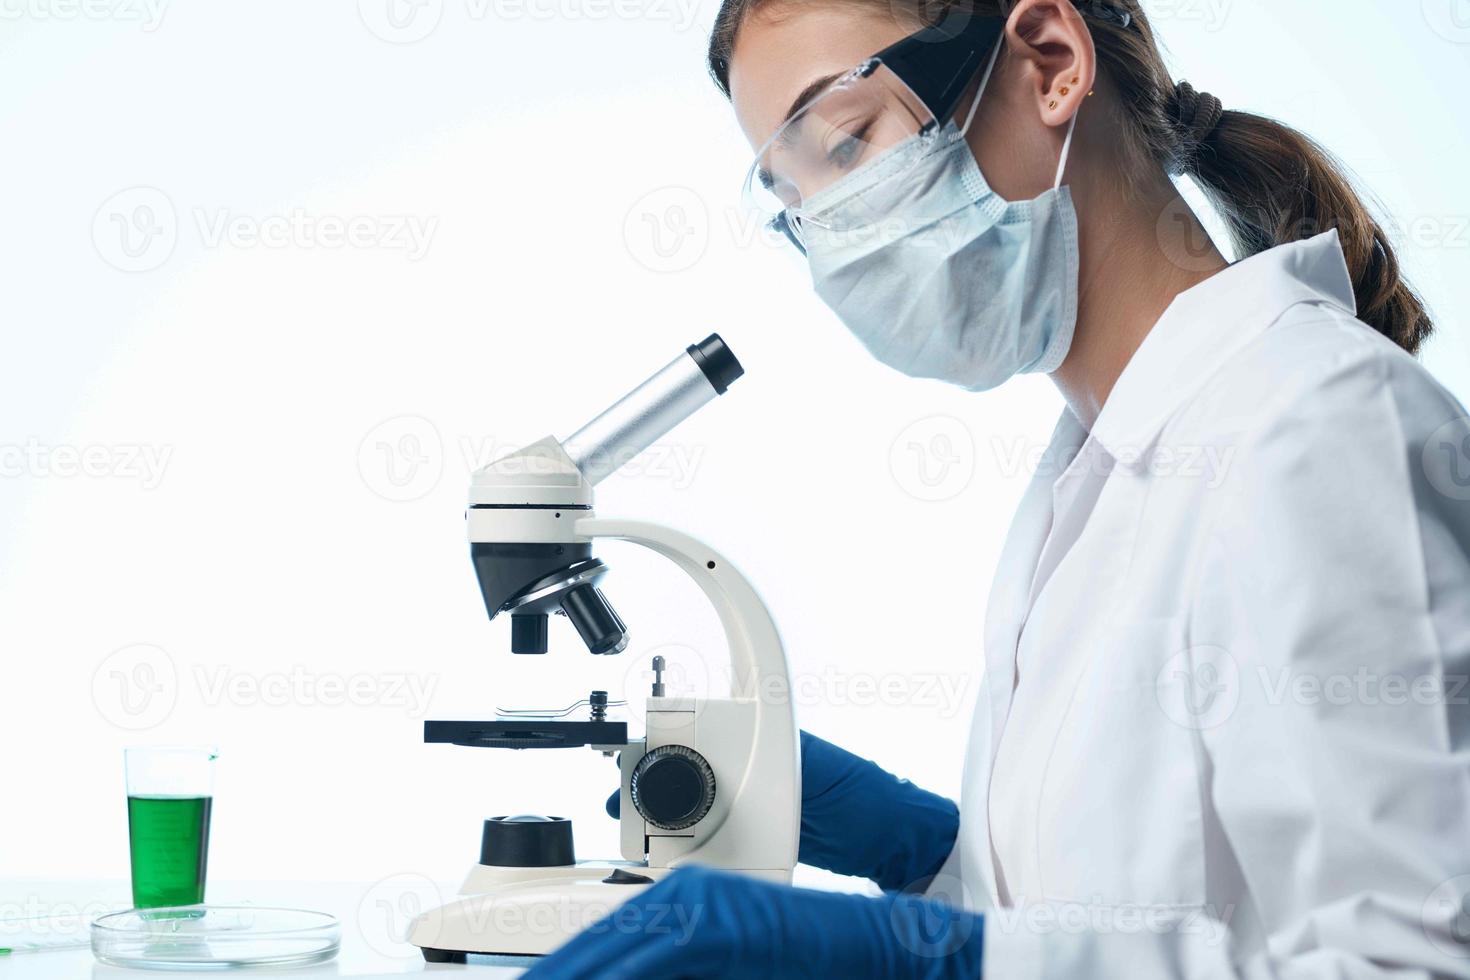 donna laboratorio assistente microscopio diagnostica chimica ricerca foto